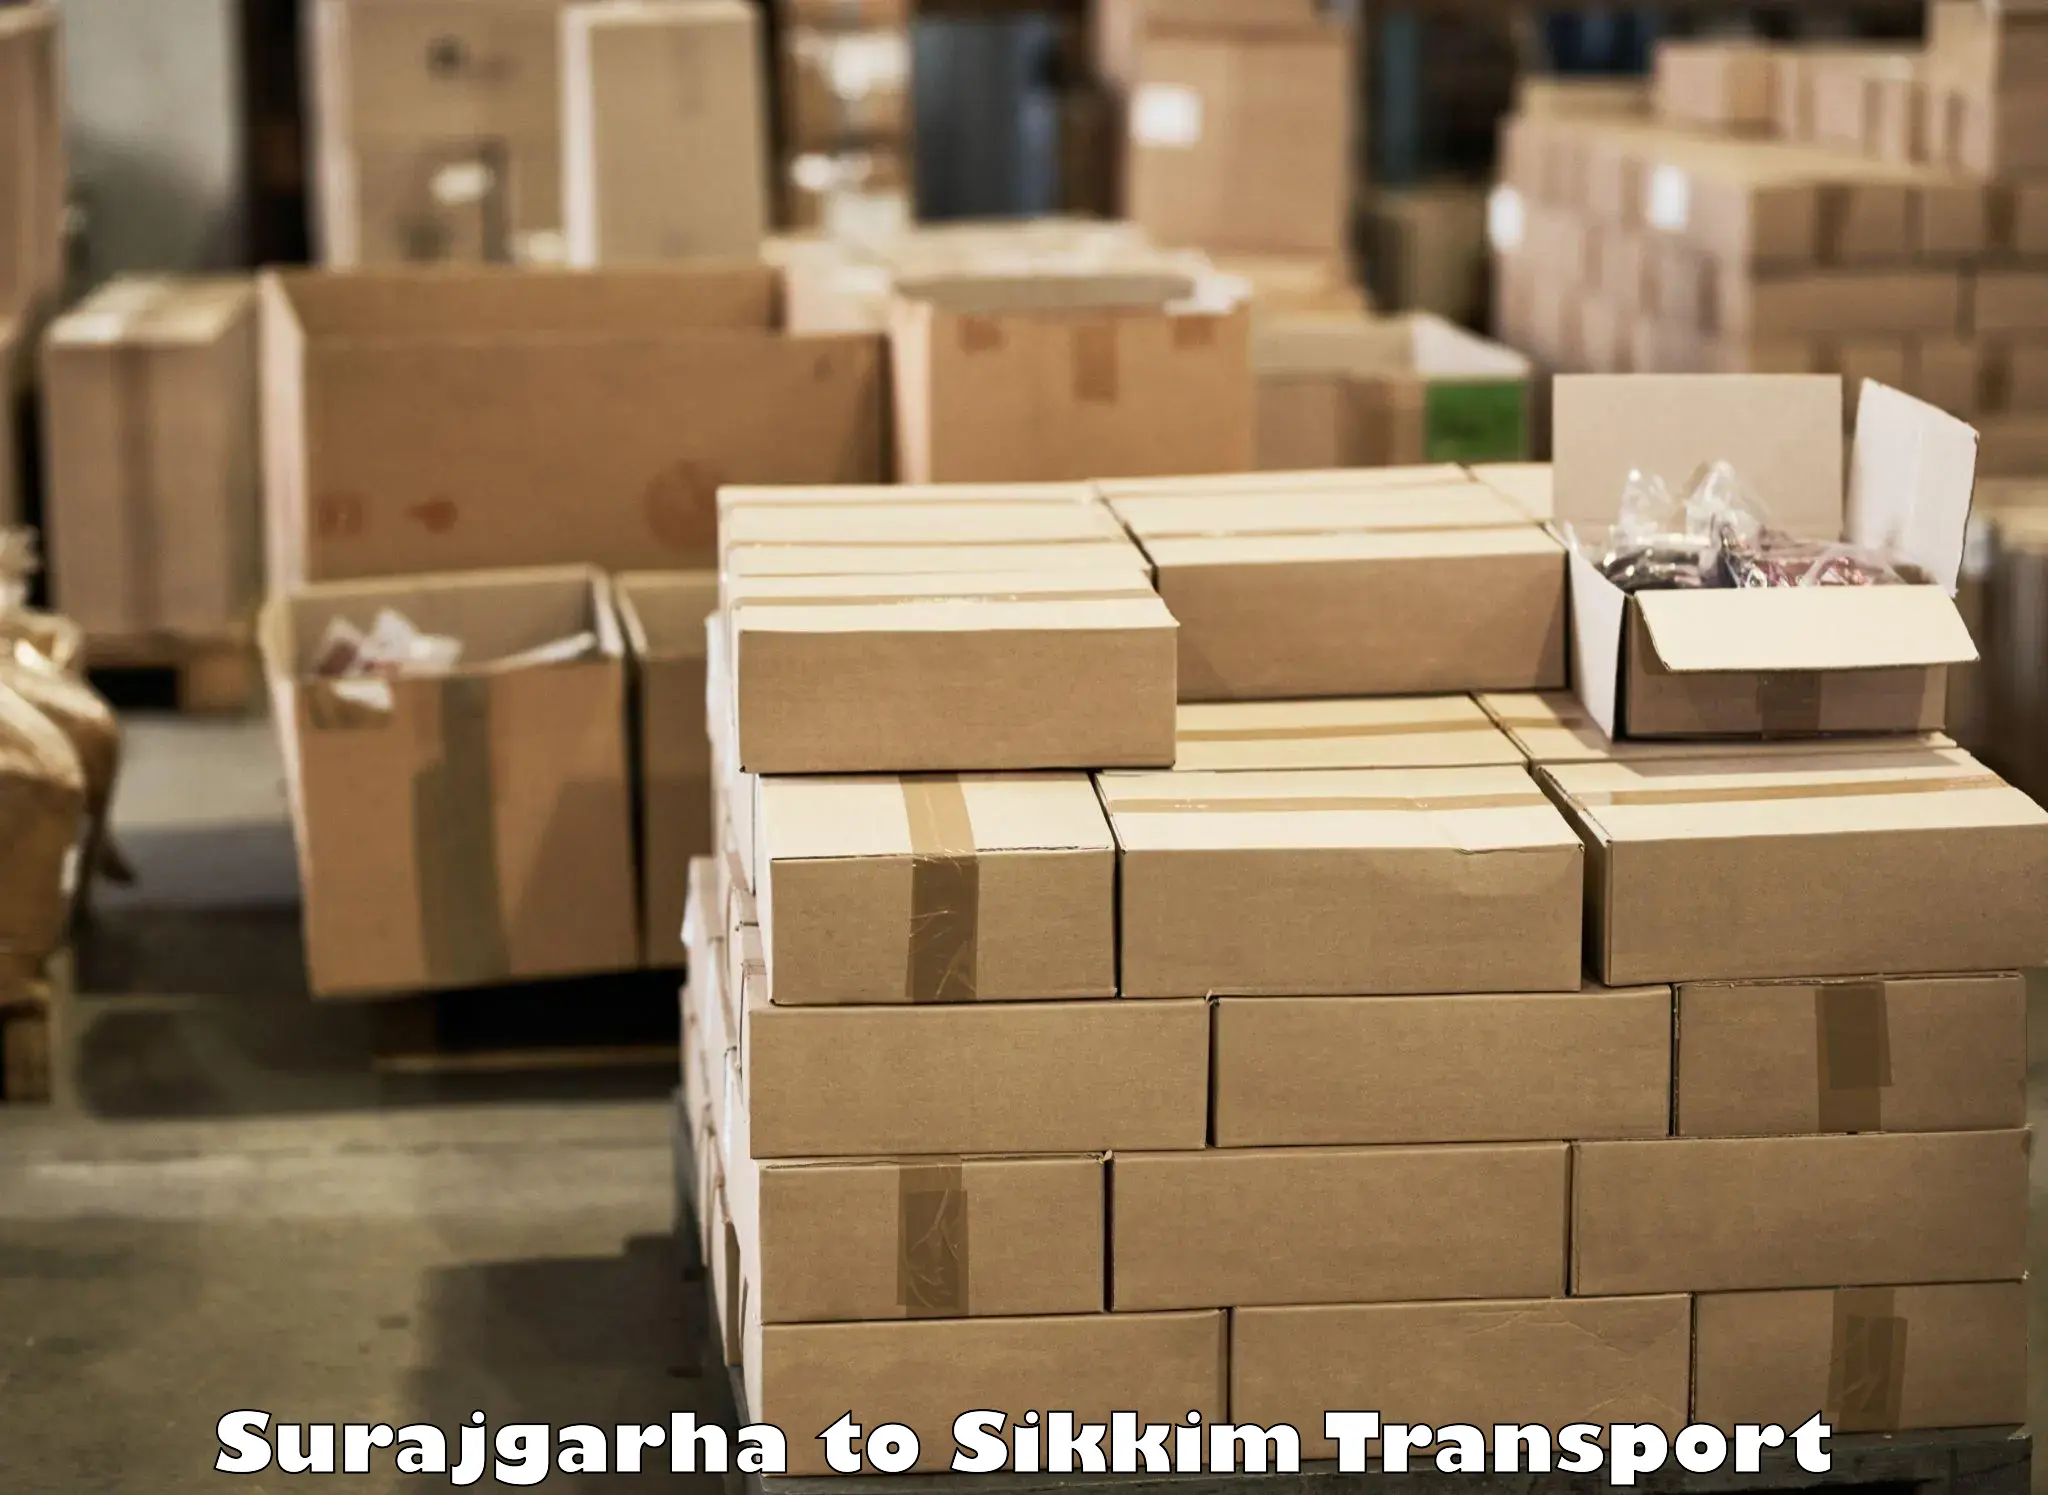 Online transport booking Surajgarha to Pelling